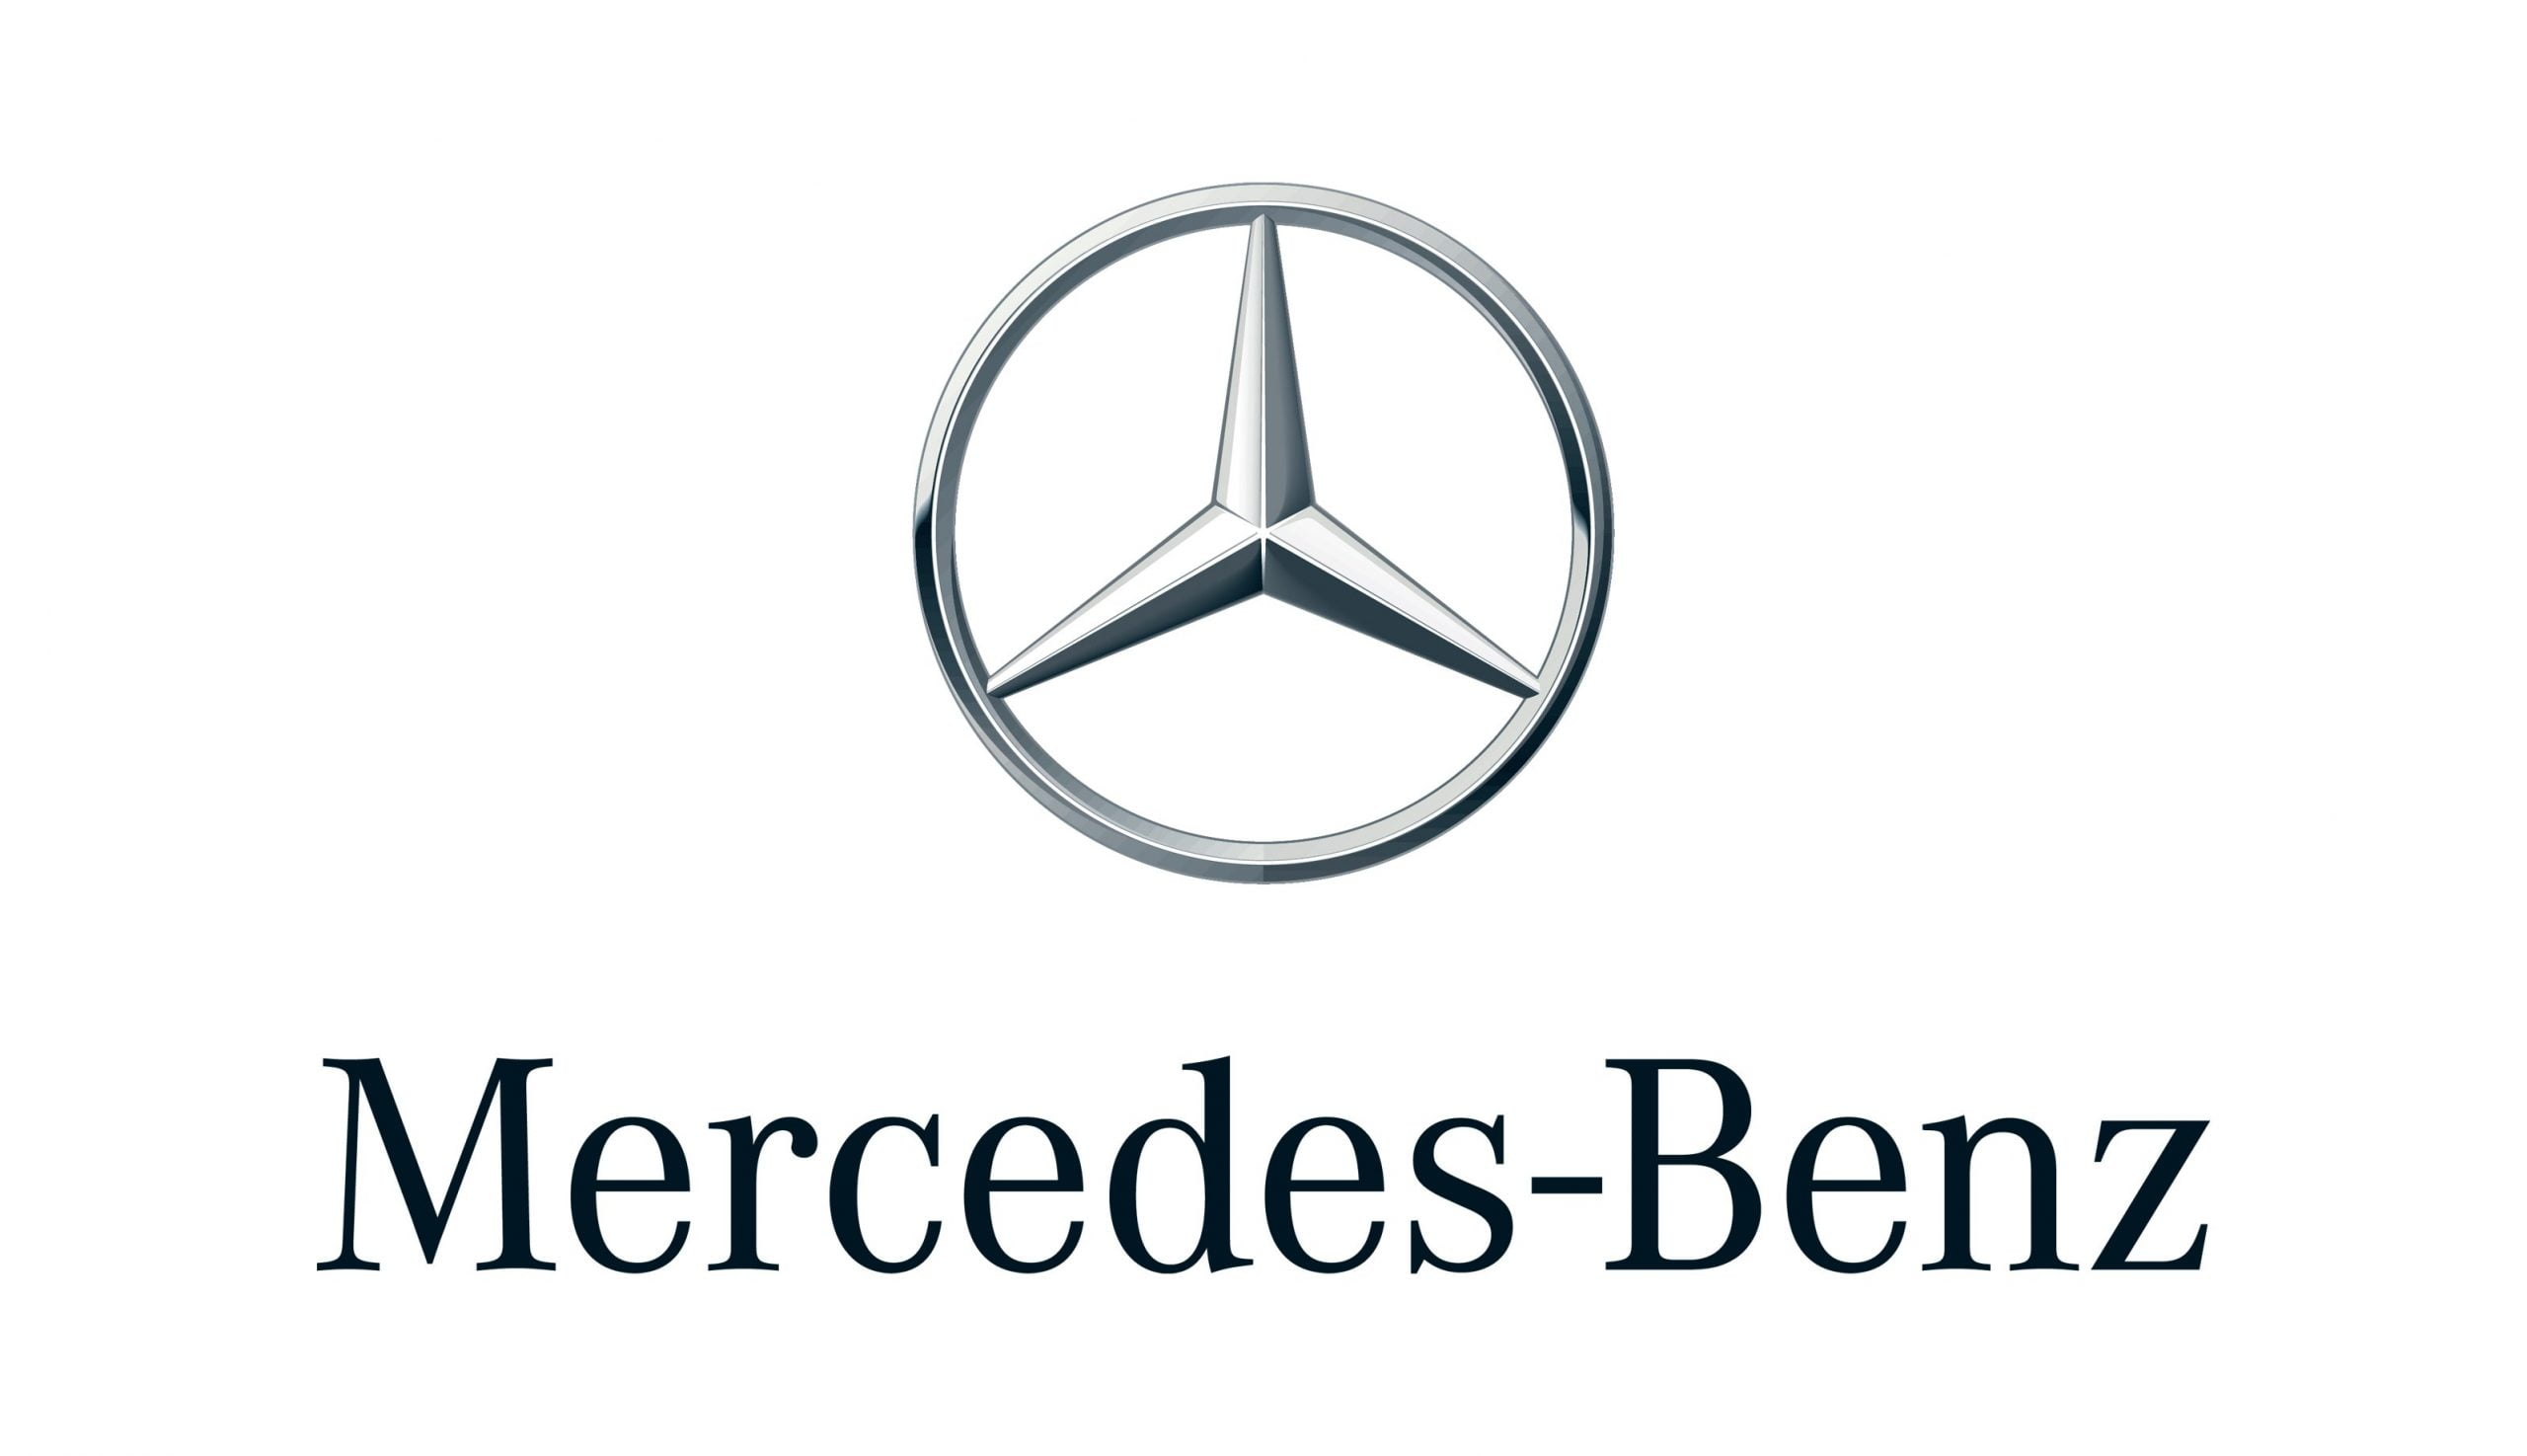 Mercedes est accusé d’avoir utilisé huit dispositifs illégaux pour ses moteurs Diesel